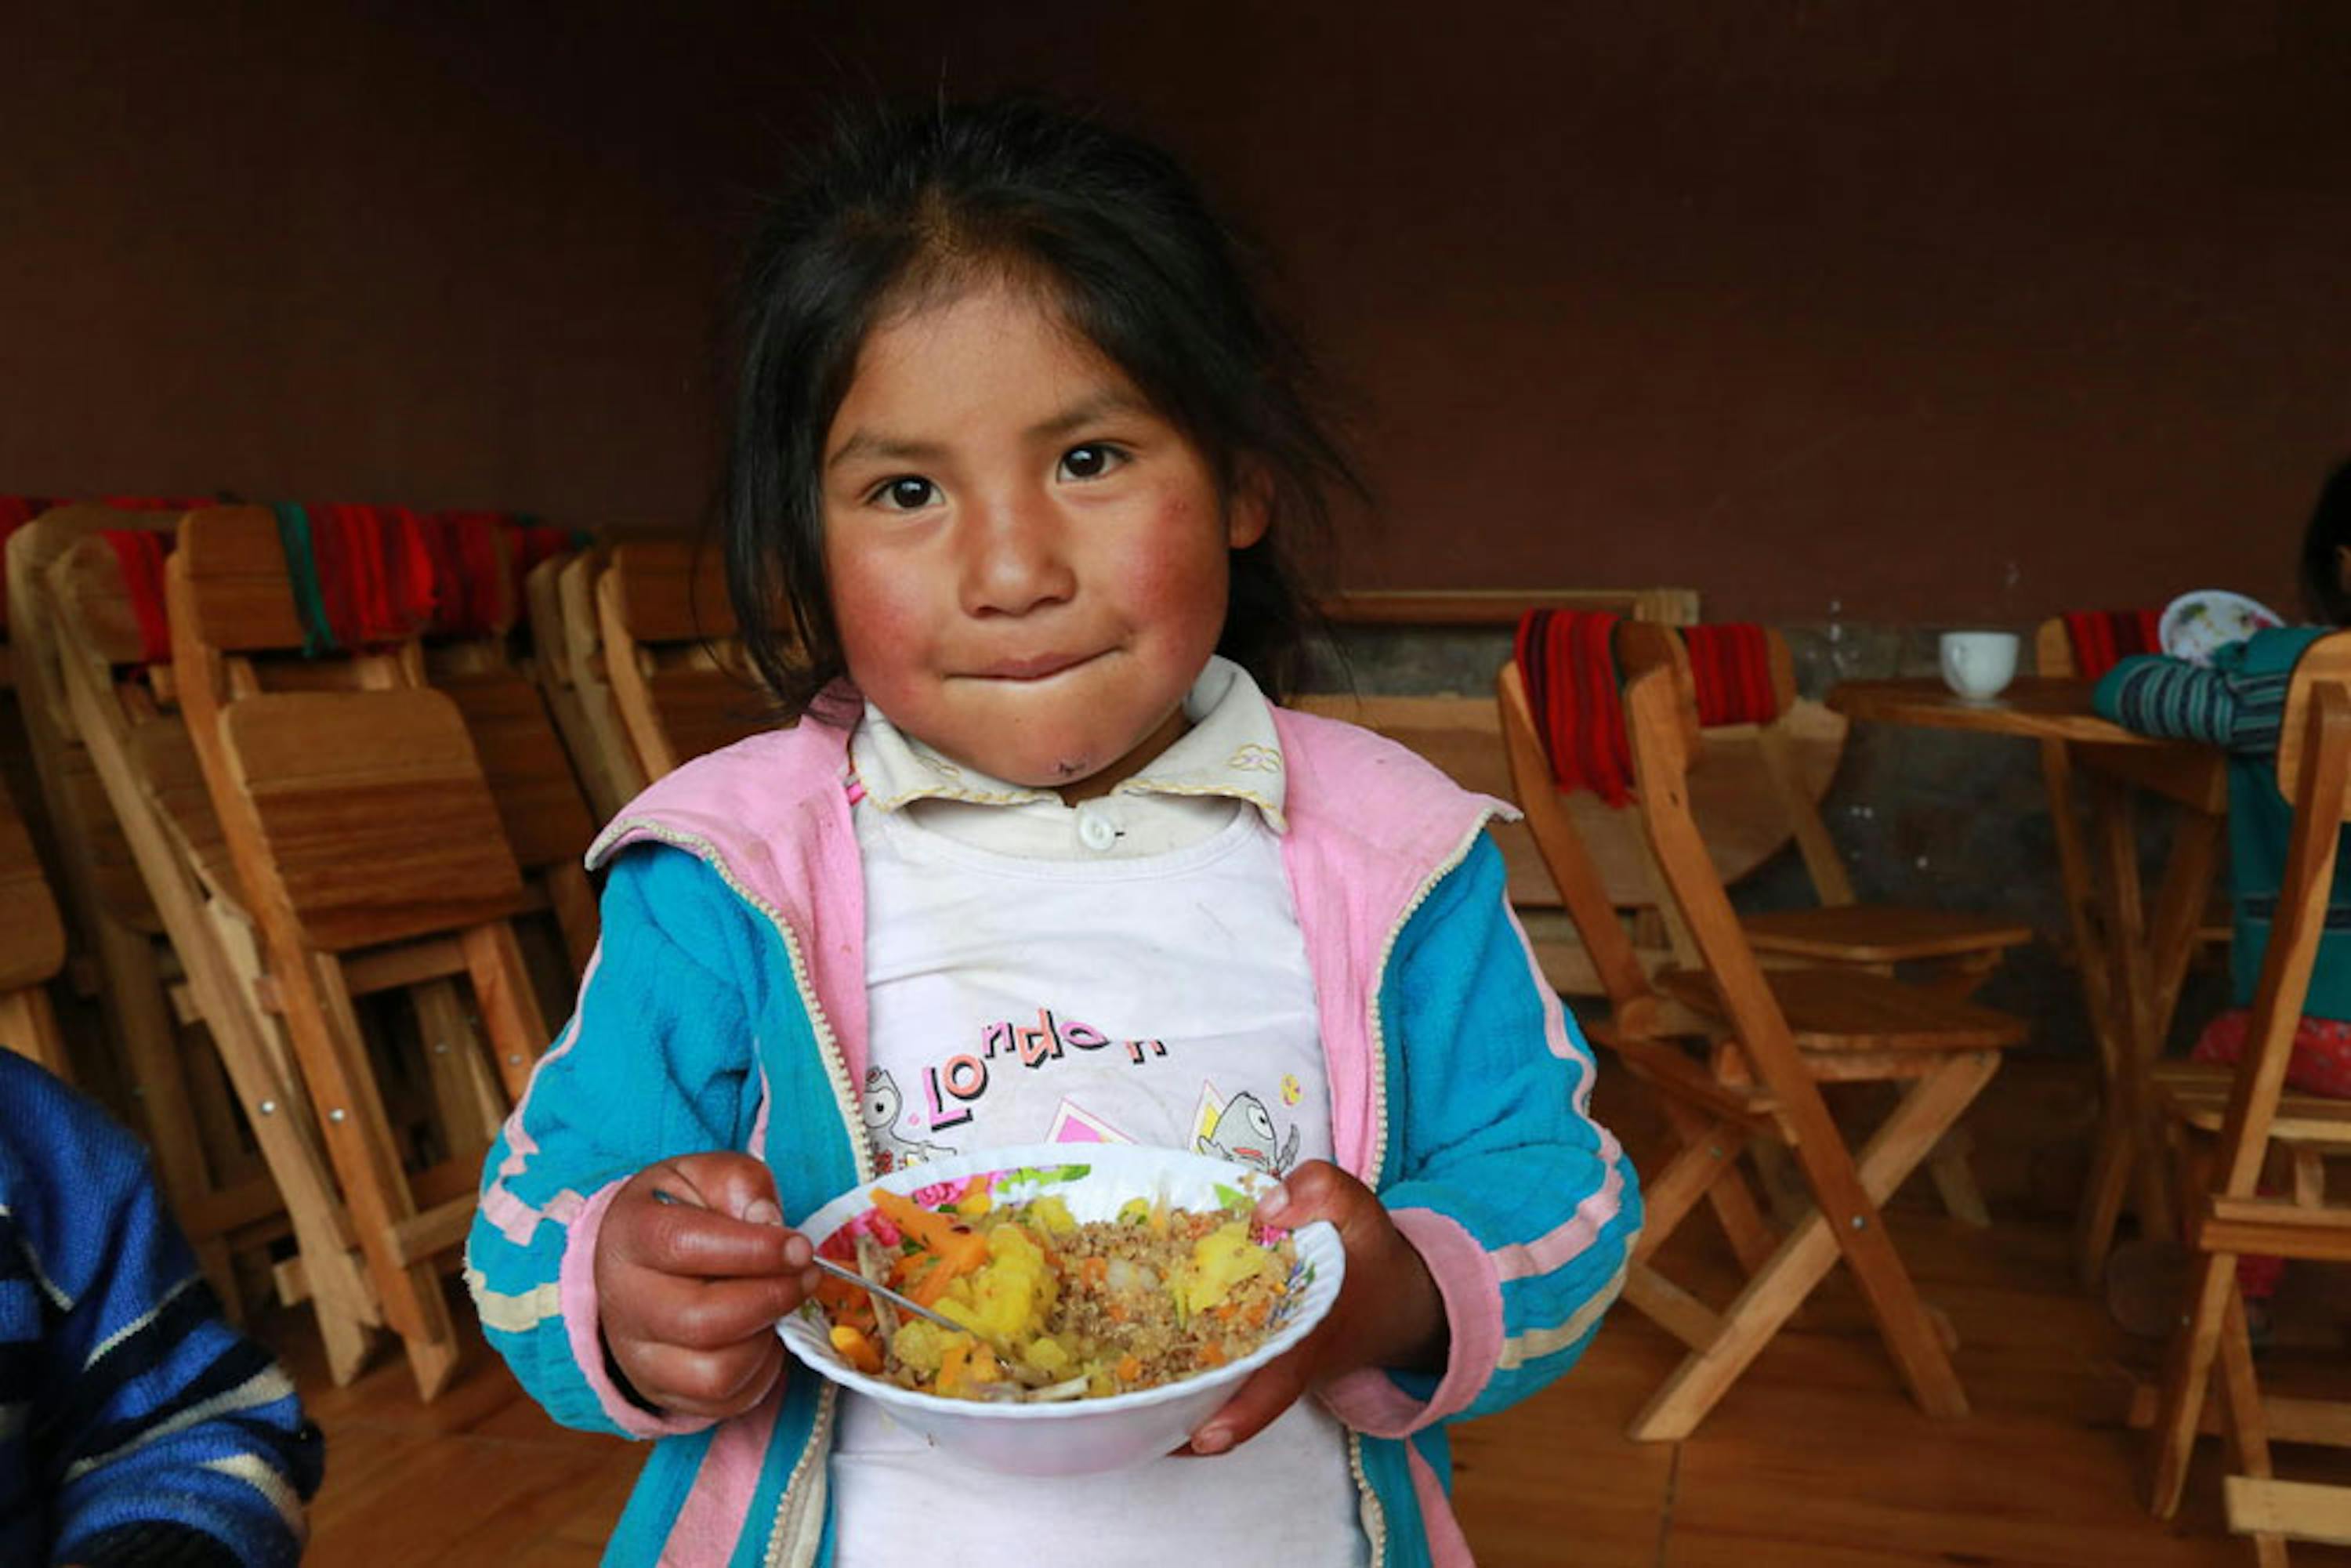 Una bambina della comunità rurale di Hanaq Chuquibamba, nei pressi di Cuzco (Perù). Questa immagine è stata scelta come copertina del Rapporto UNICEF 2019 - © UNICEF/UNI212715/Vilca